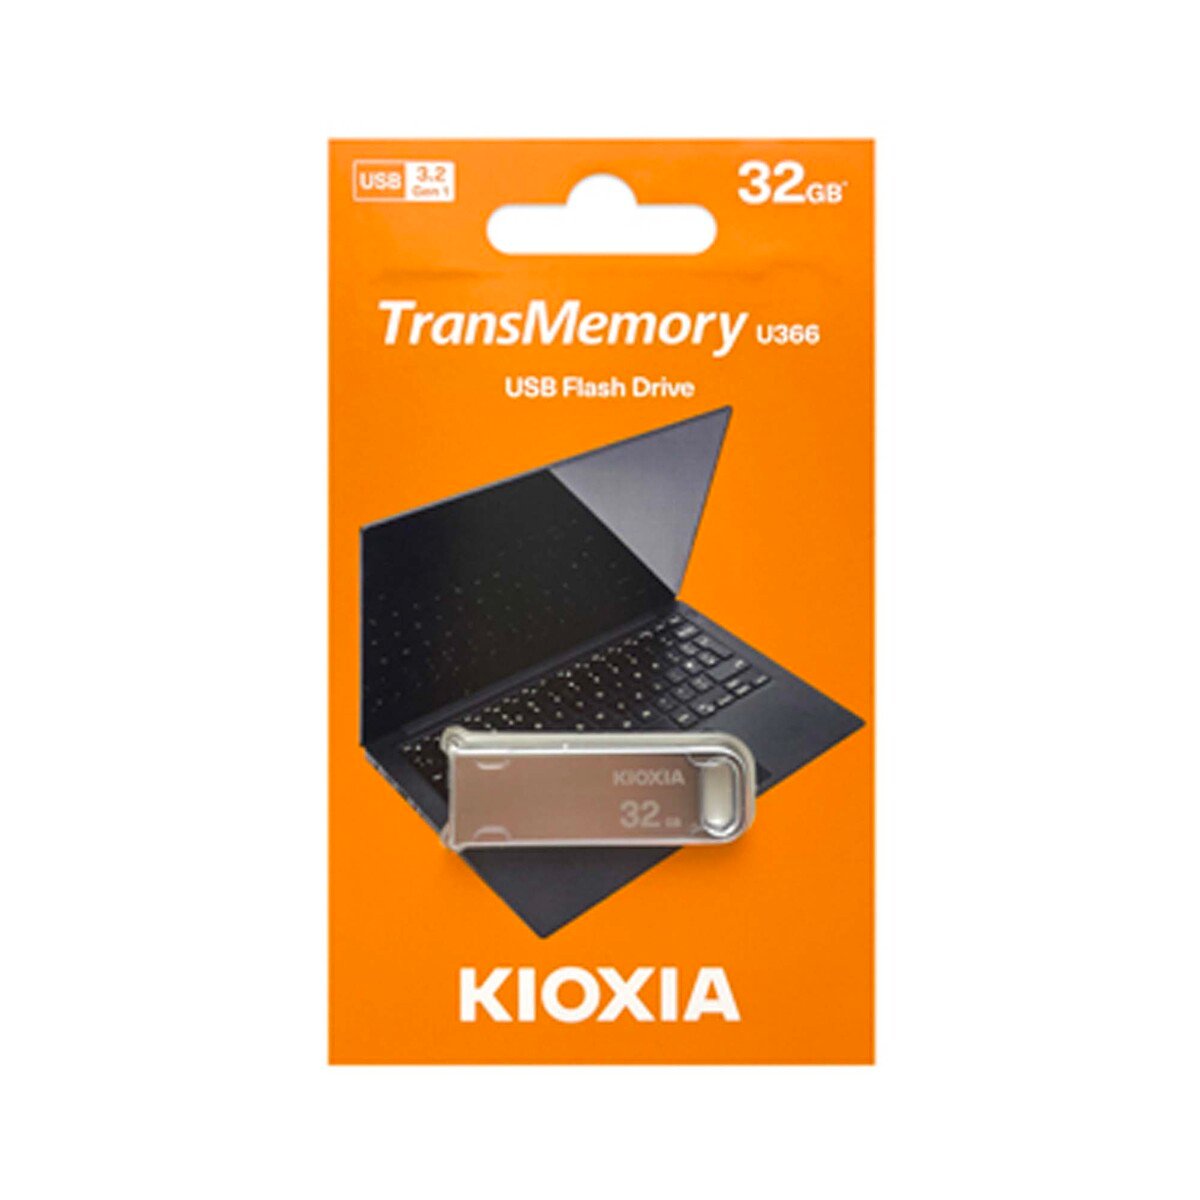 Kioxia TransMemory U366 32GB